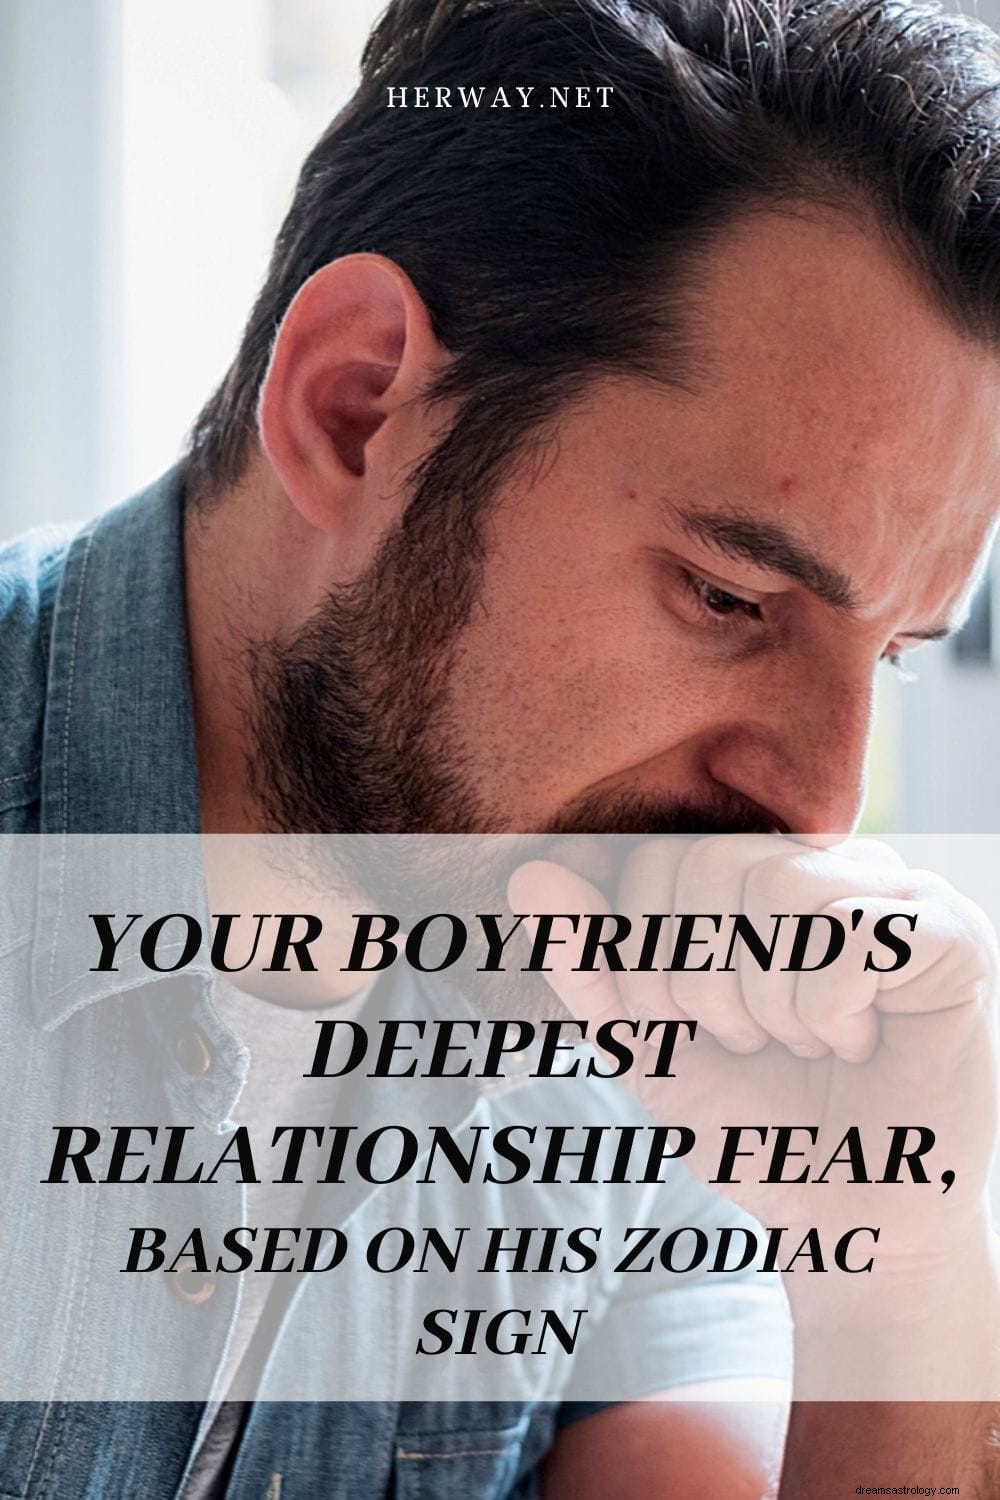 Din kærestes dybeste frygt for forhold, baseret på hans stjernetegn